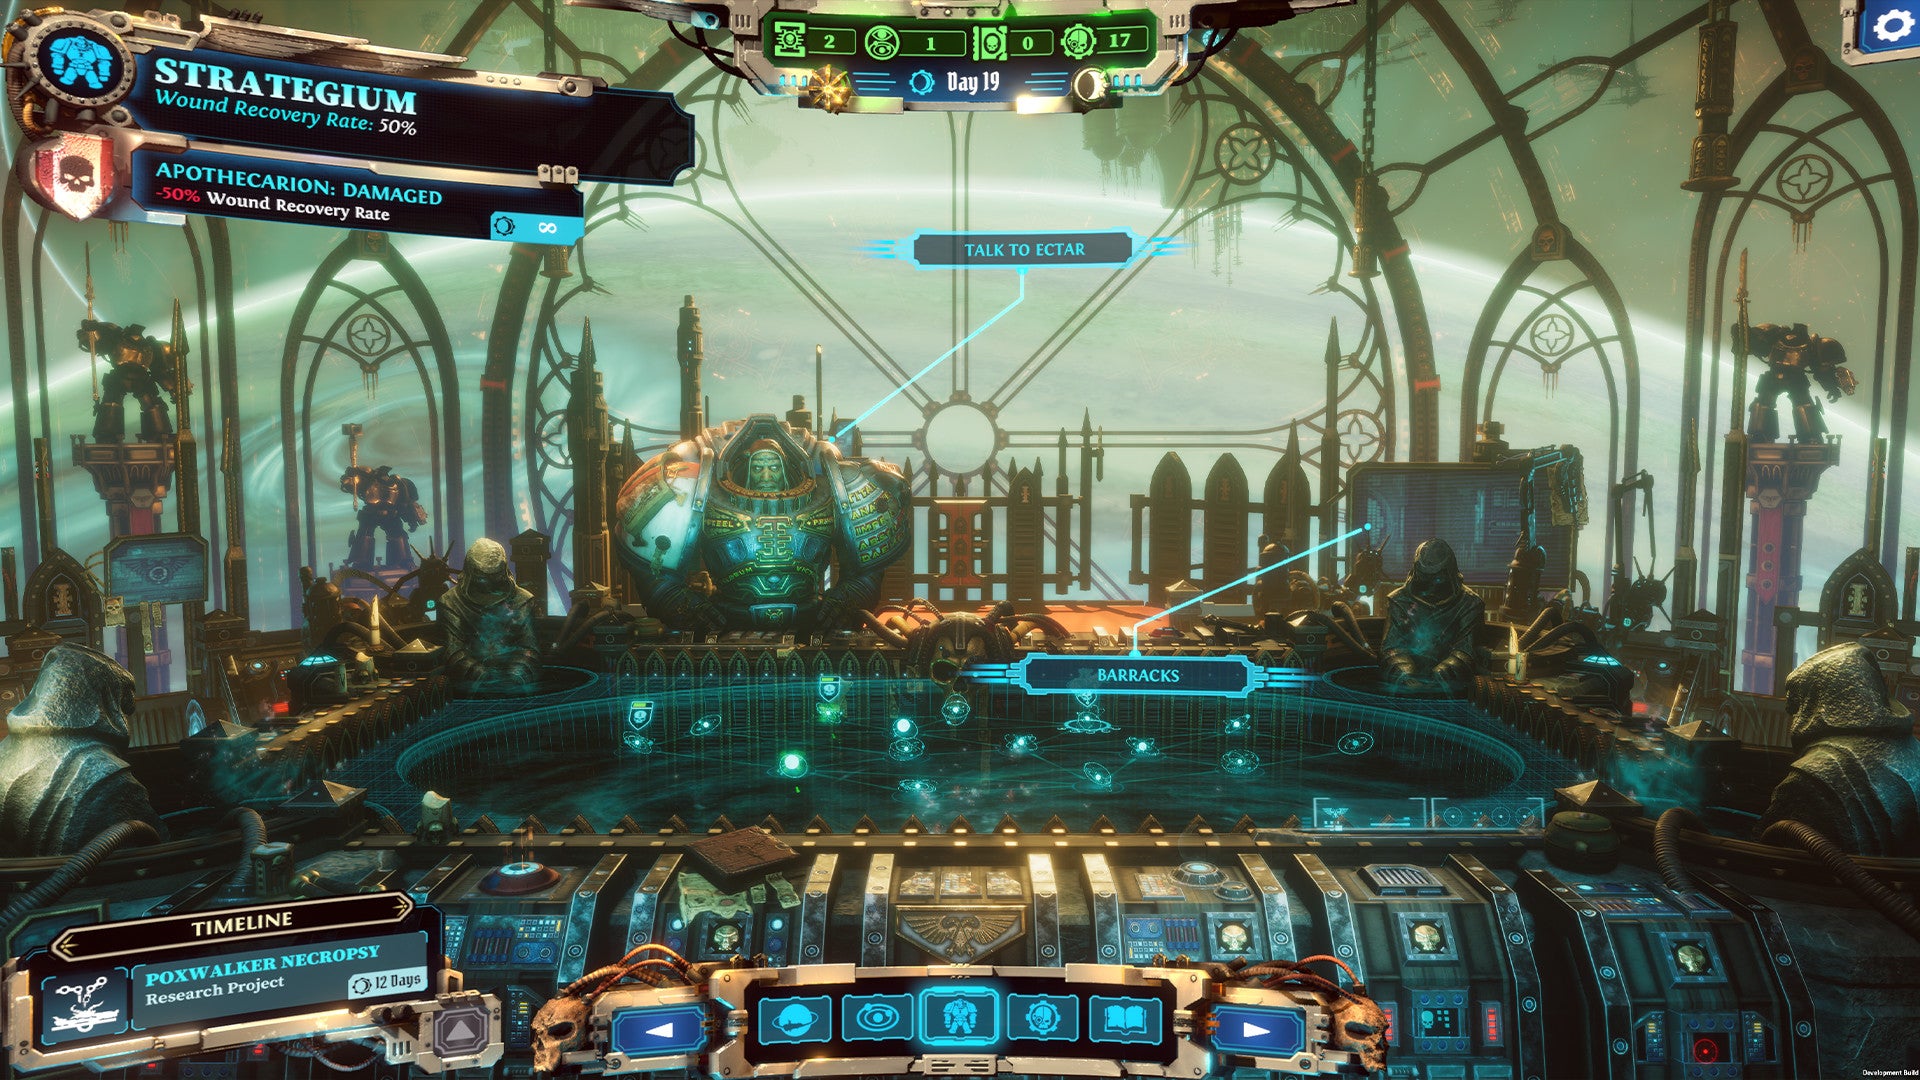 Ectar preside el Strategium en una nave espacial de aspecto gótico en Warhammer 40K: Chaos Gate - Cazadores de demonios